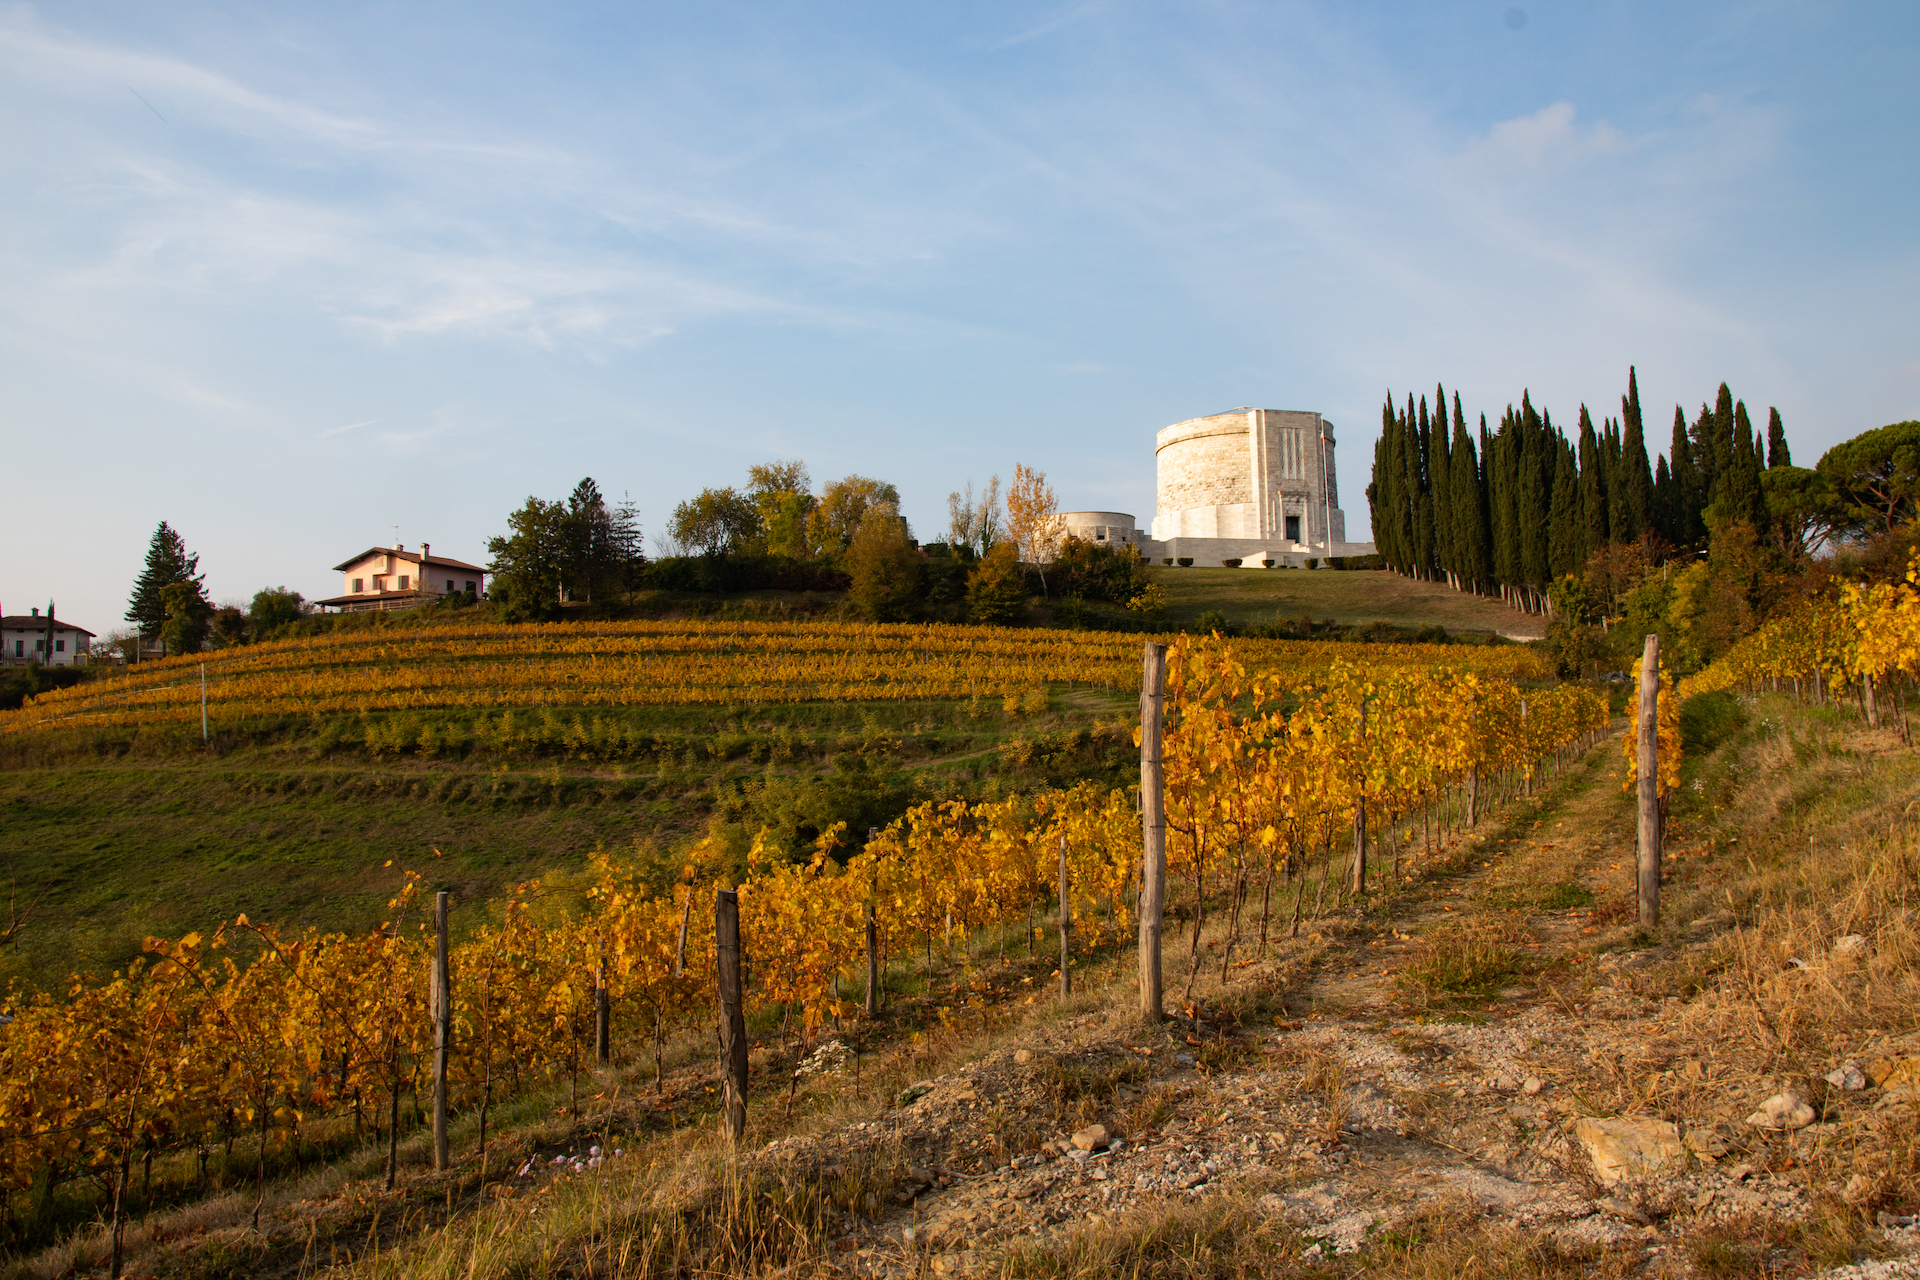 Enotour #002 - Una trasferta ai confini del vino | Friuli, una terra di paradossi | Oslavia/Cividale La Castellada Primosic Princic Flaibani